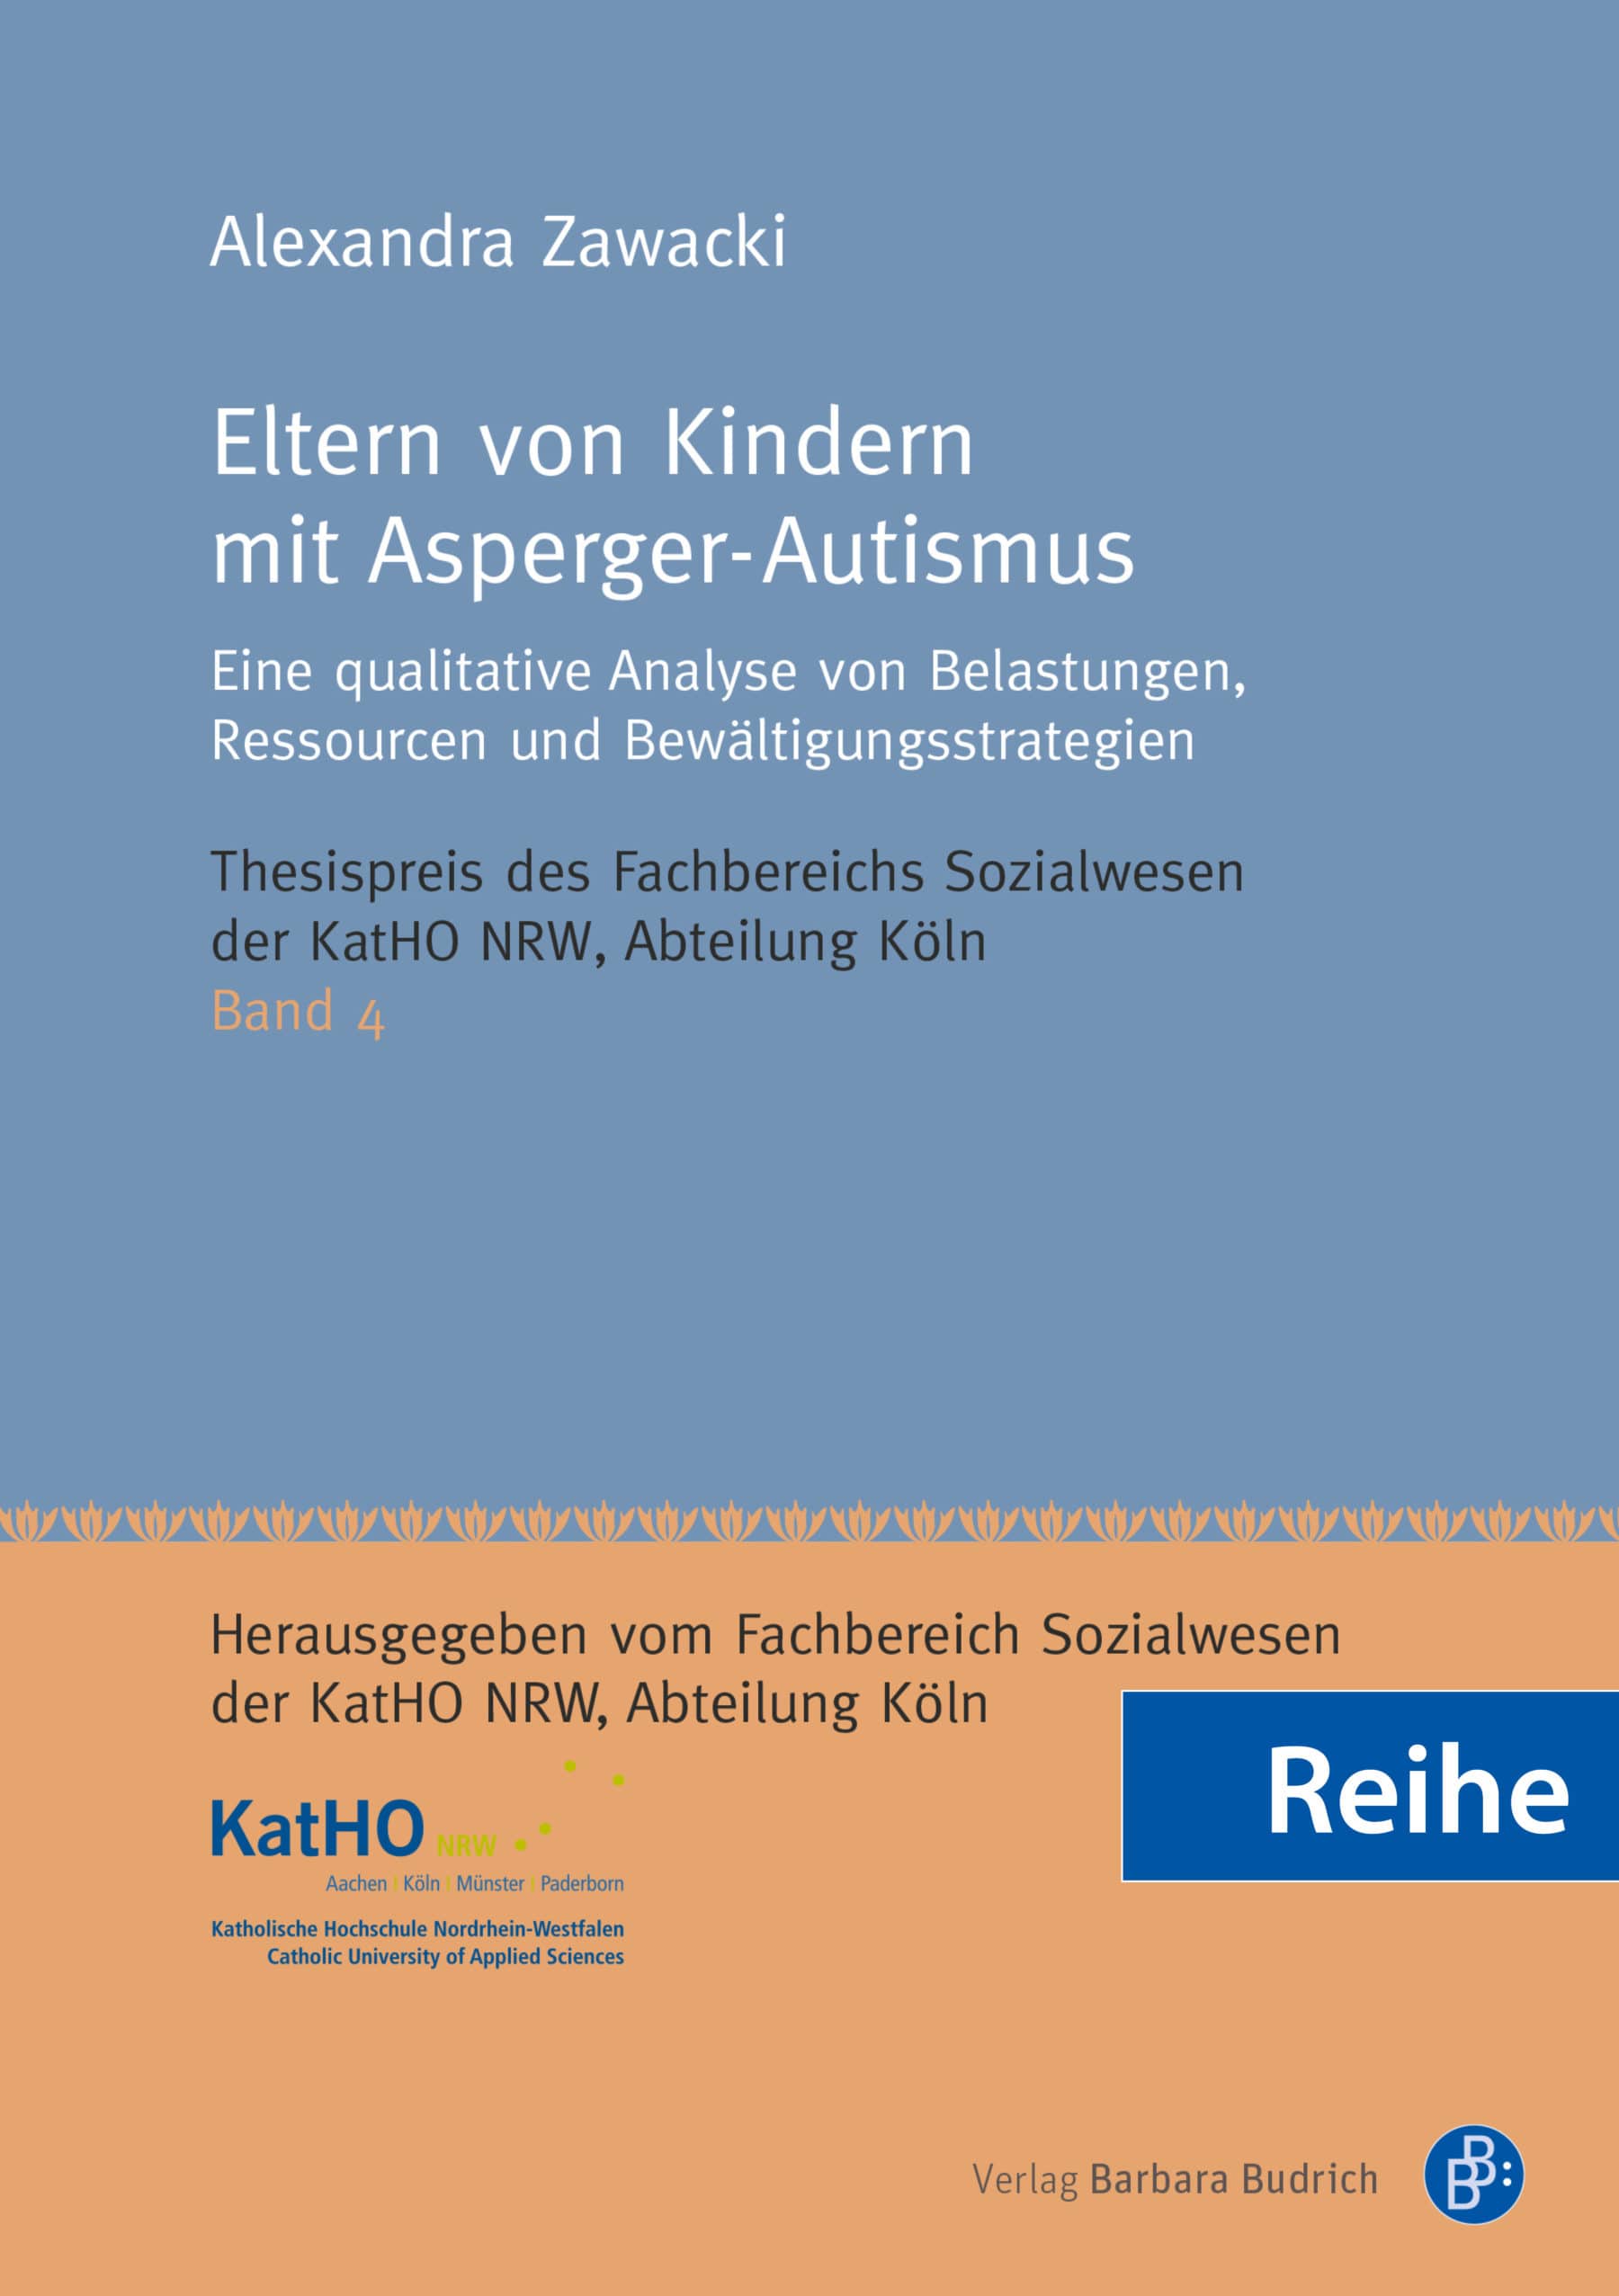 Reihe – Thesispreis des Fachbereichs Sozialwesen der KatHO NRW, Abteilung Köln